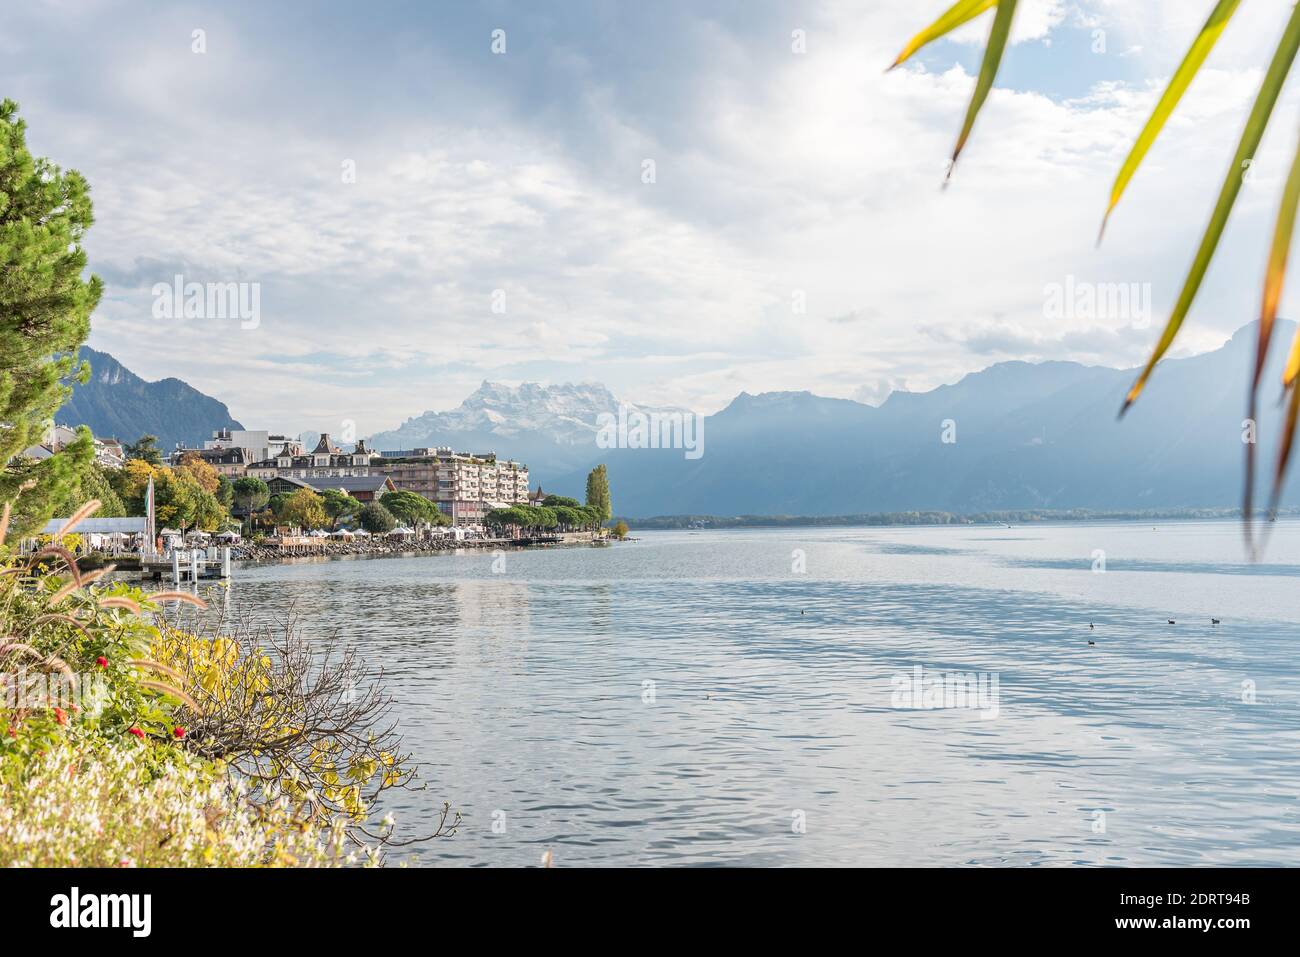 Bord de lac alpin entouré de sommets enneigés et d'une ville sur la rive. Montreux, Lac de Genève en Suisse Banque D'Images